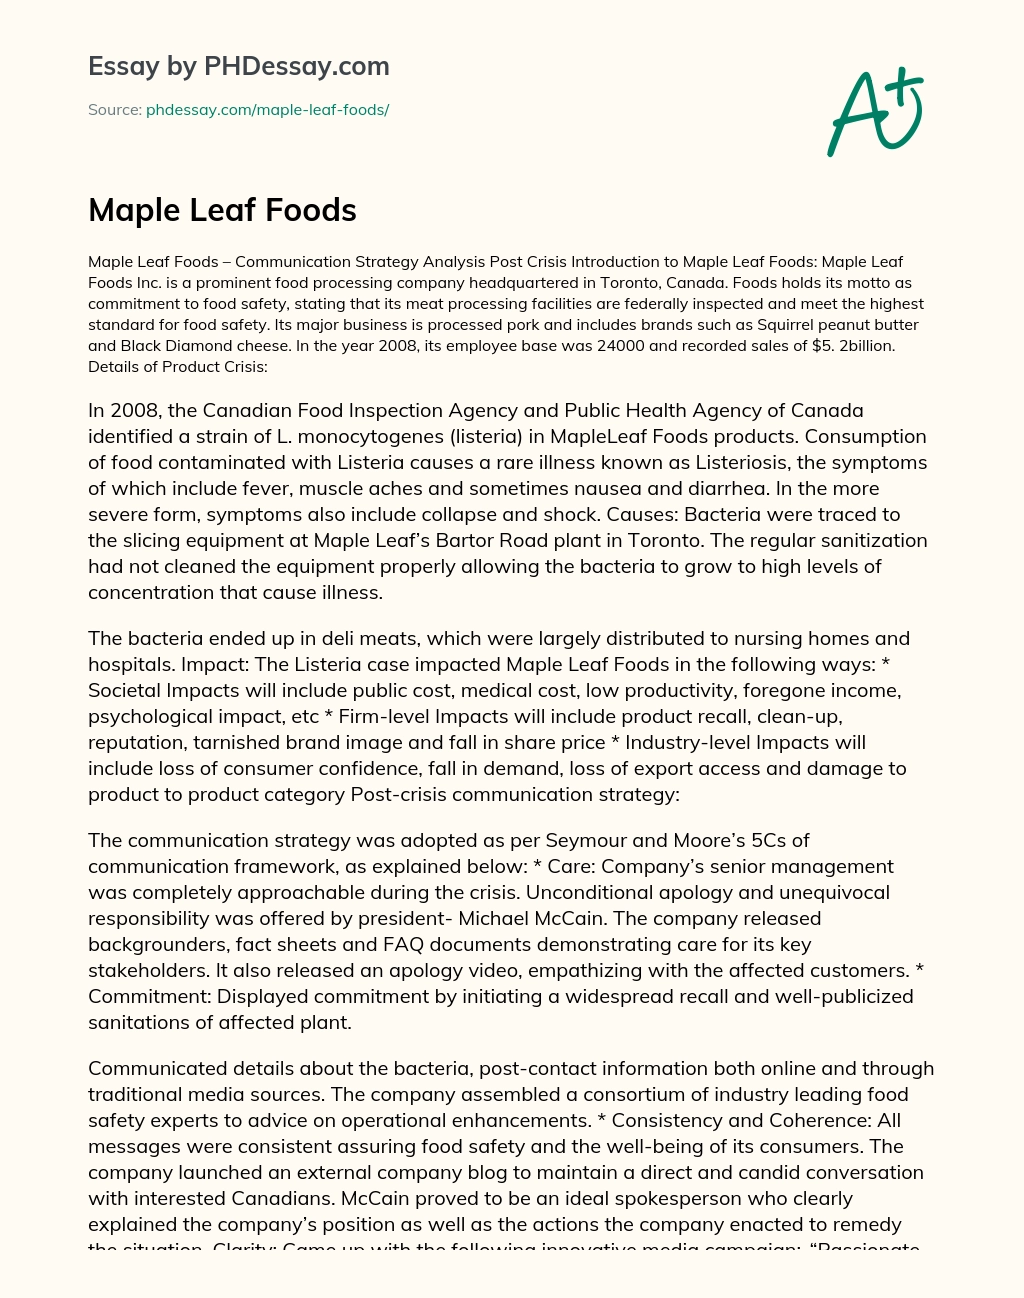 Maple Leaf Foods essay